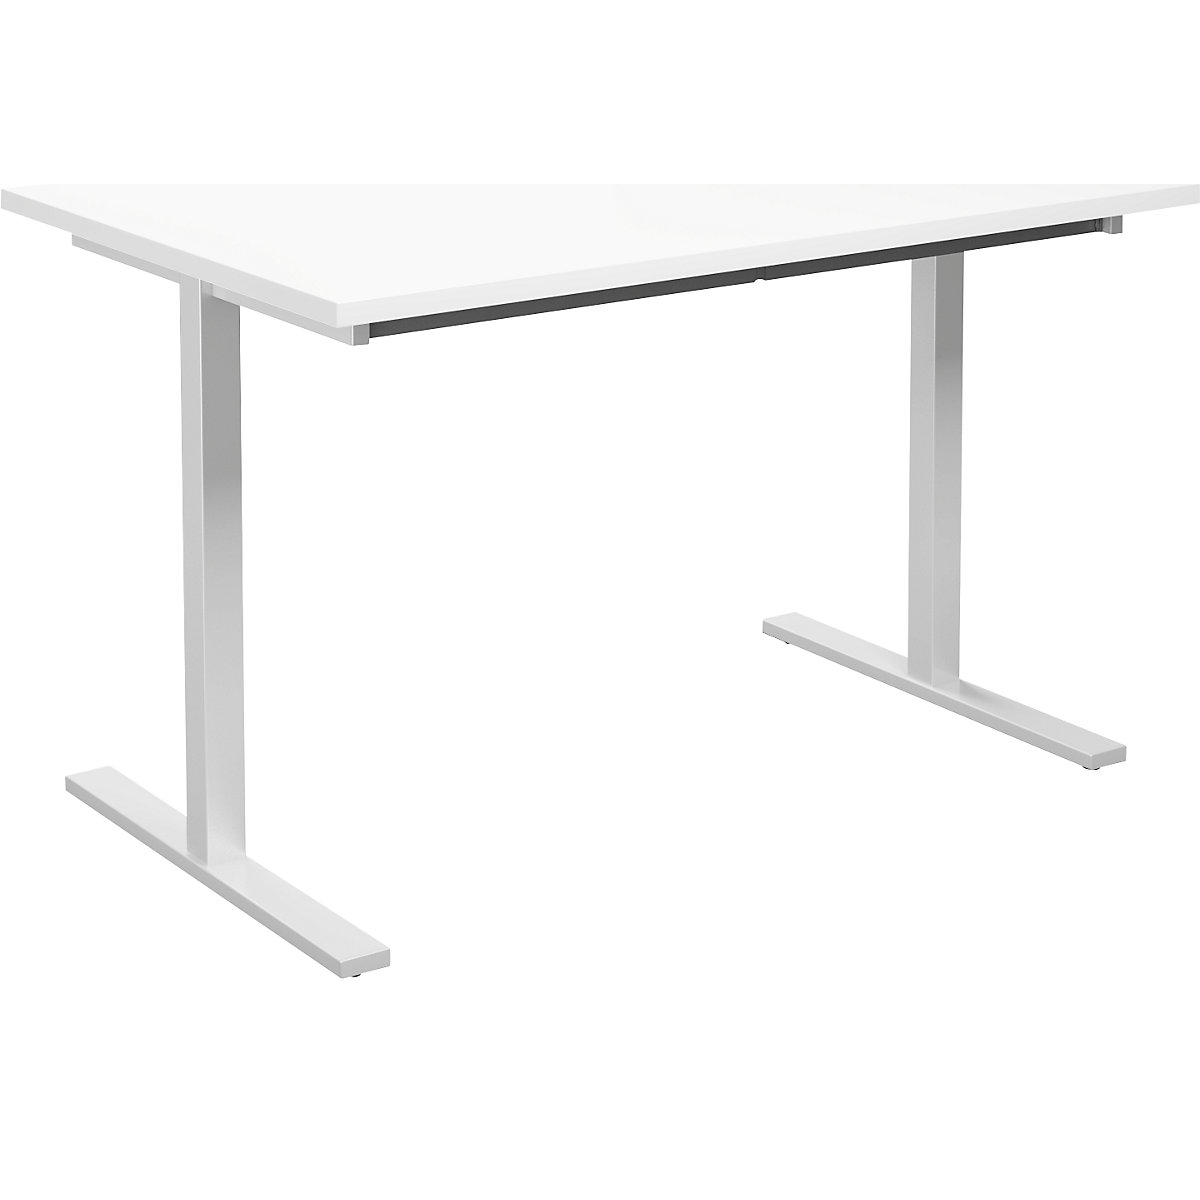 DUO-T multi-purpose desk, straight tabletop, WxD 1200 x 800 mm, white, white-6